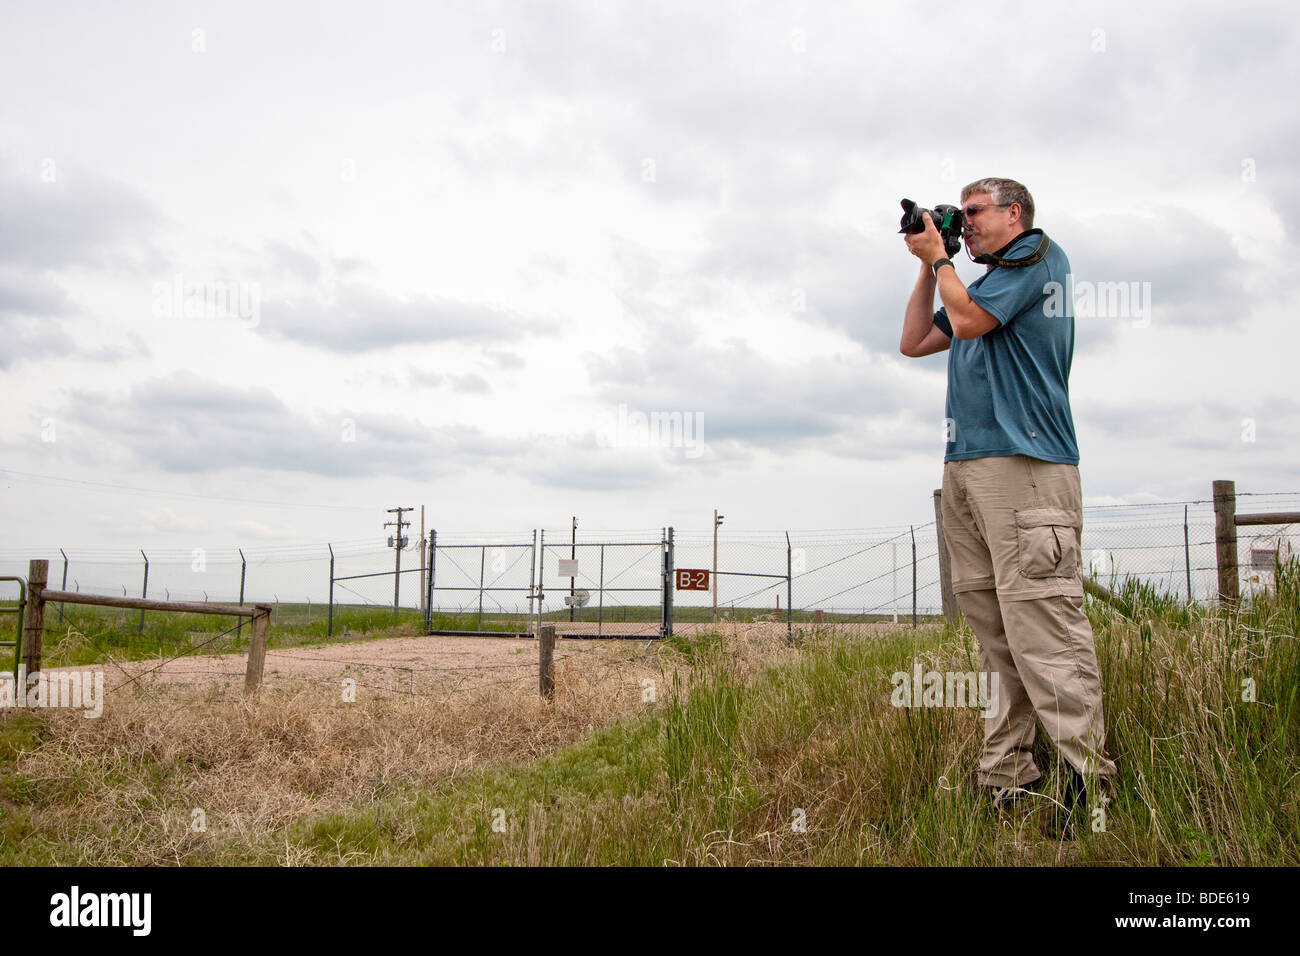 Auteur Phil Berg prend une photo en face d'un silo de missiles Minuteman dans l'ouest du Nebraska au cours de projet Vortex 2. Le 5 juin 2009. Banque D'Images